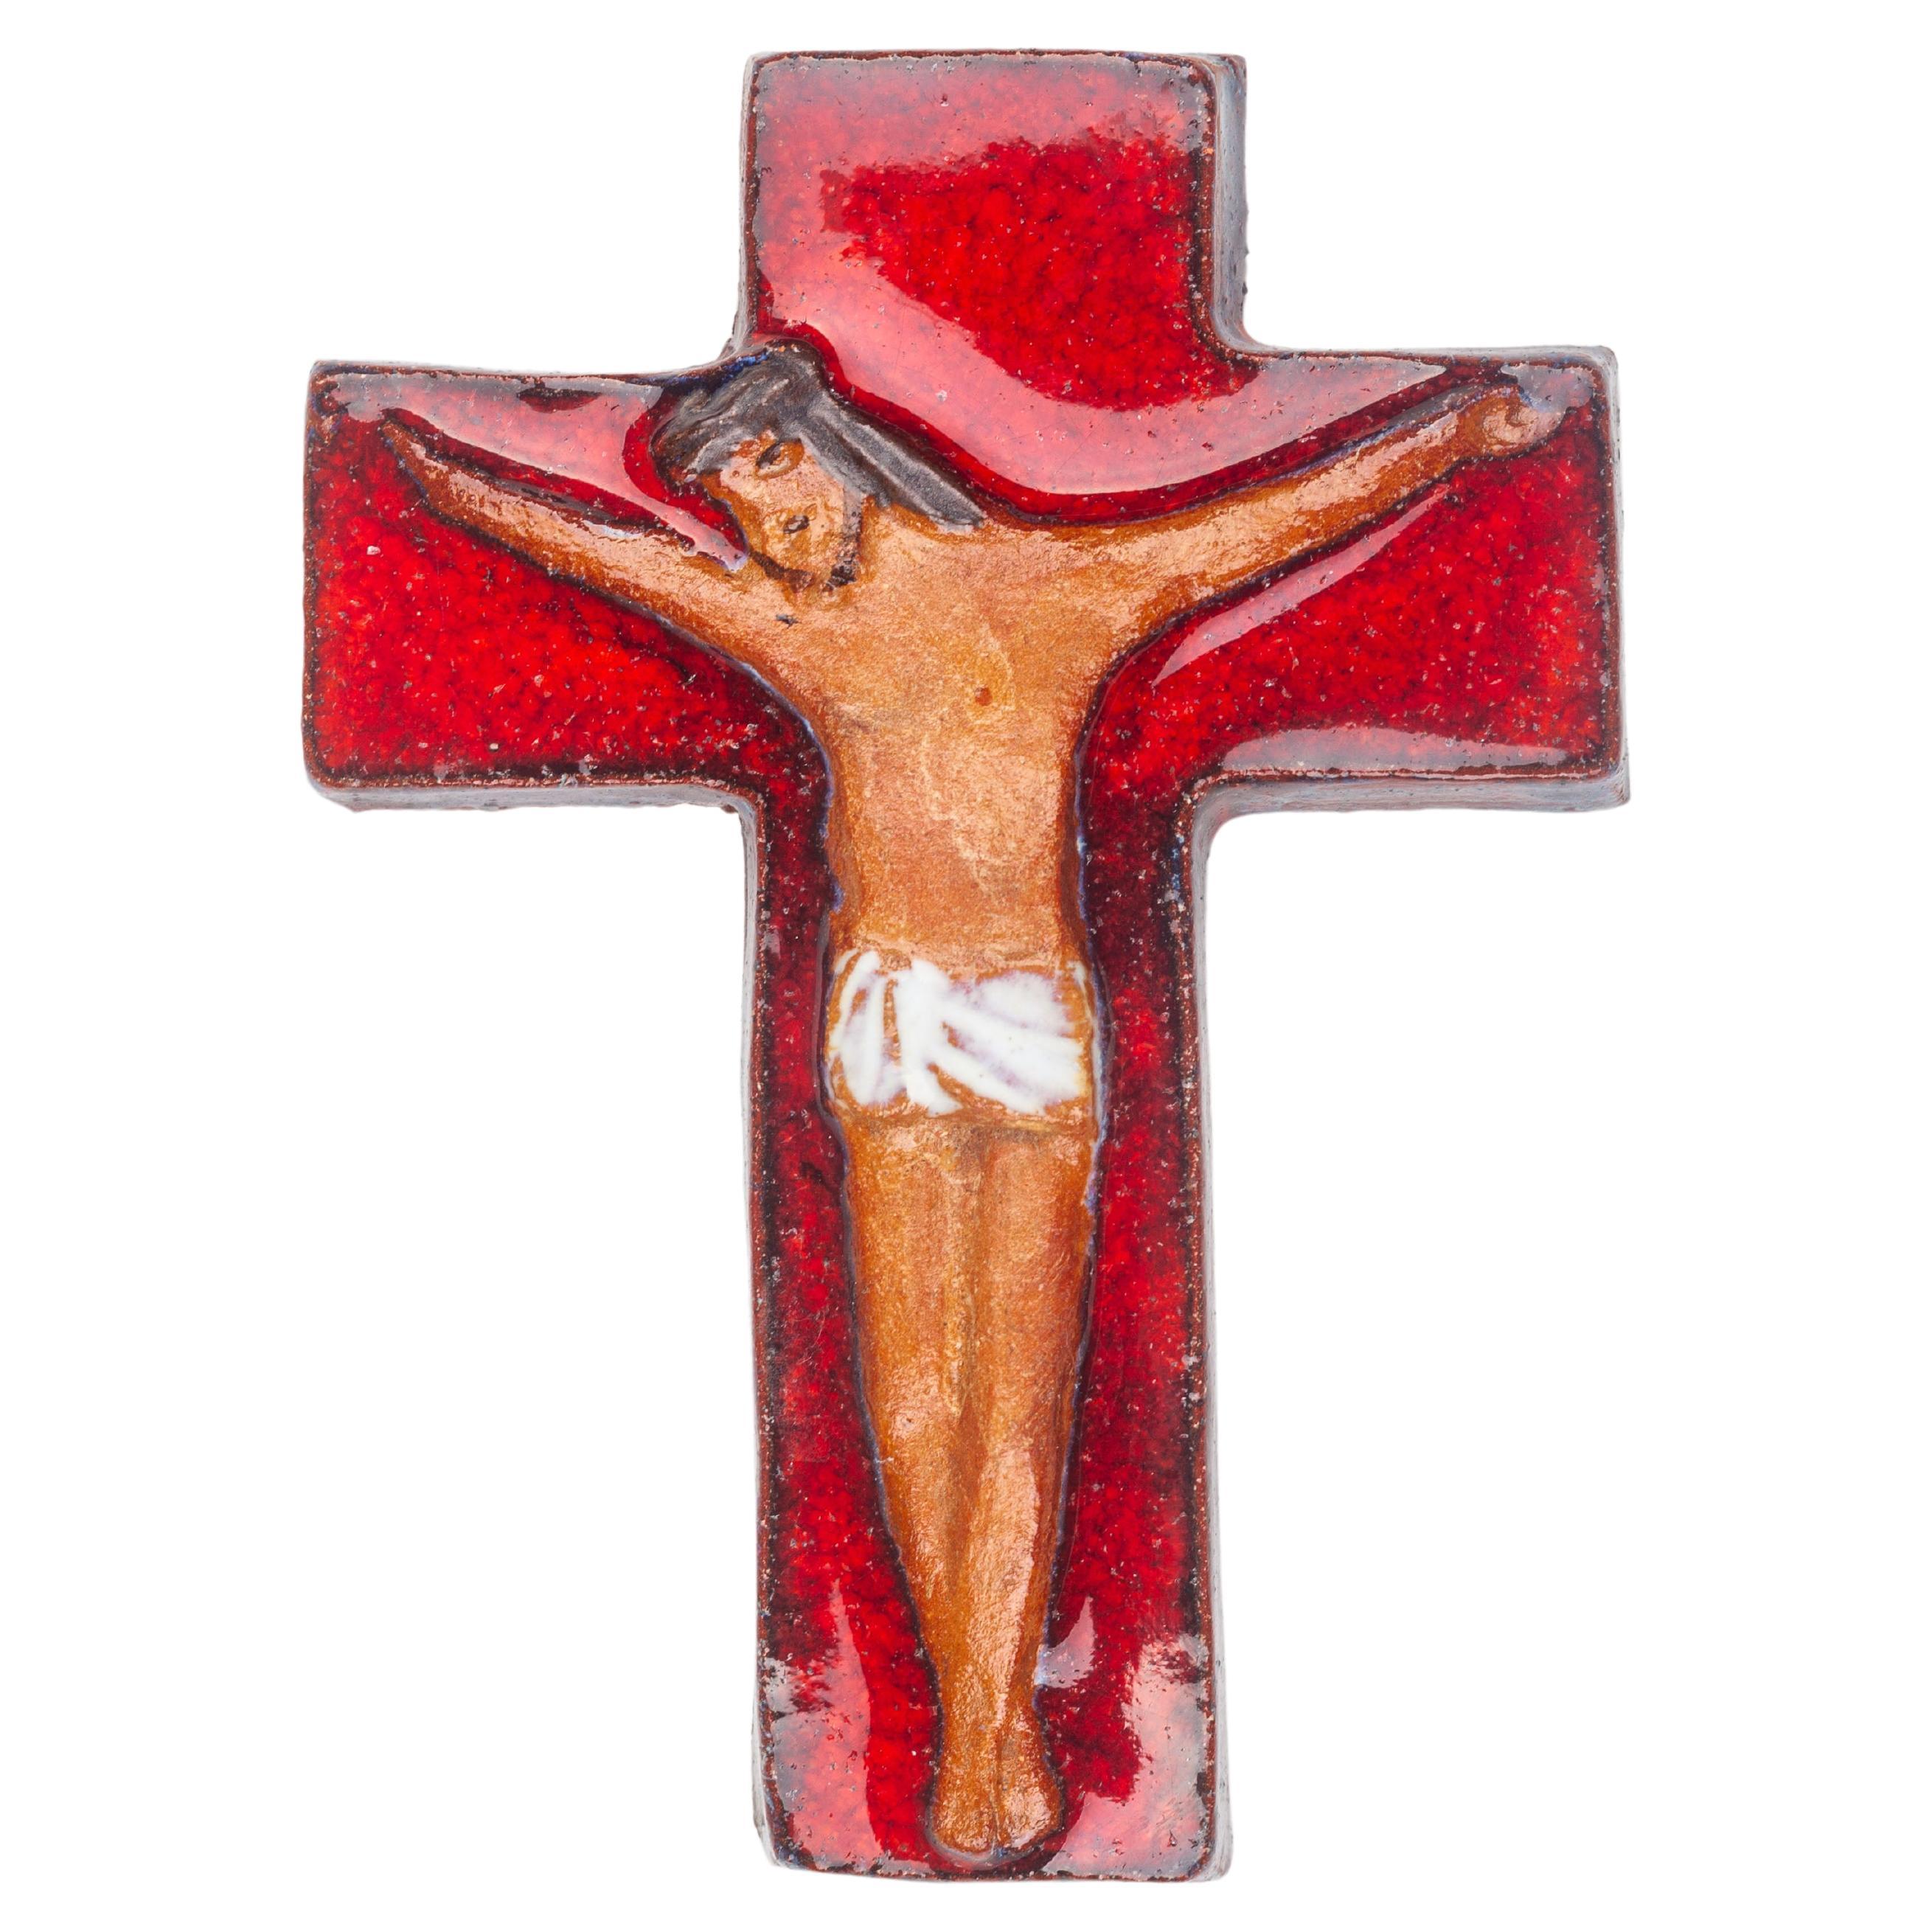 Croix en céramique rouge brillante avec figure du Christ mat et abstrait dans les tons terreux